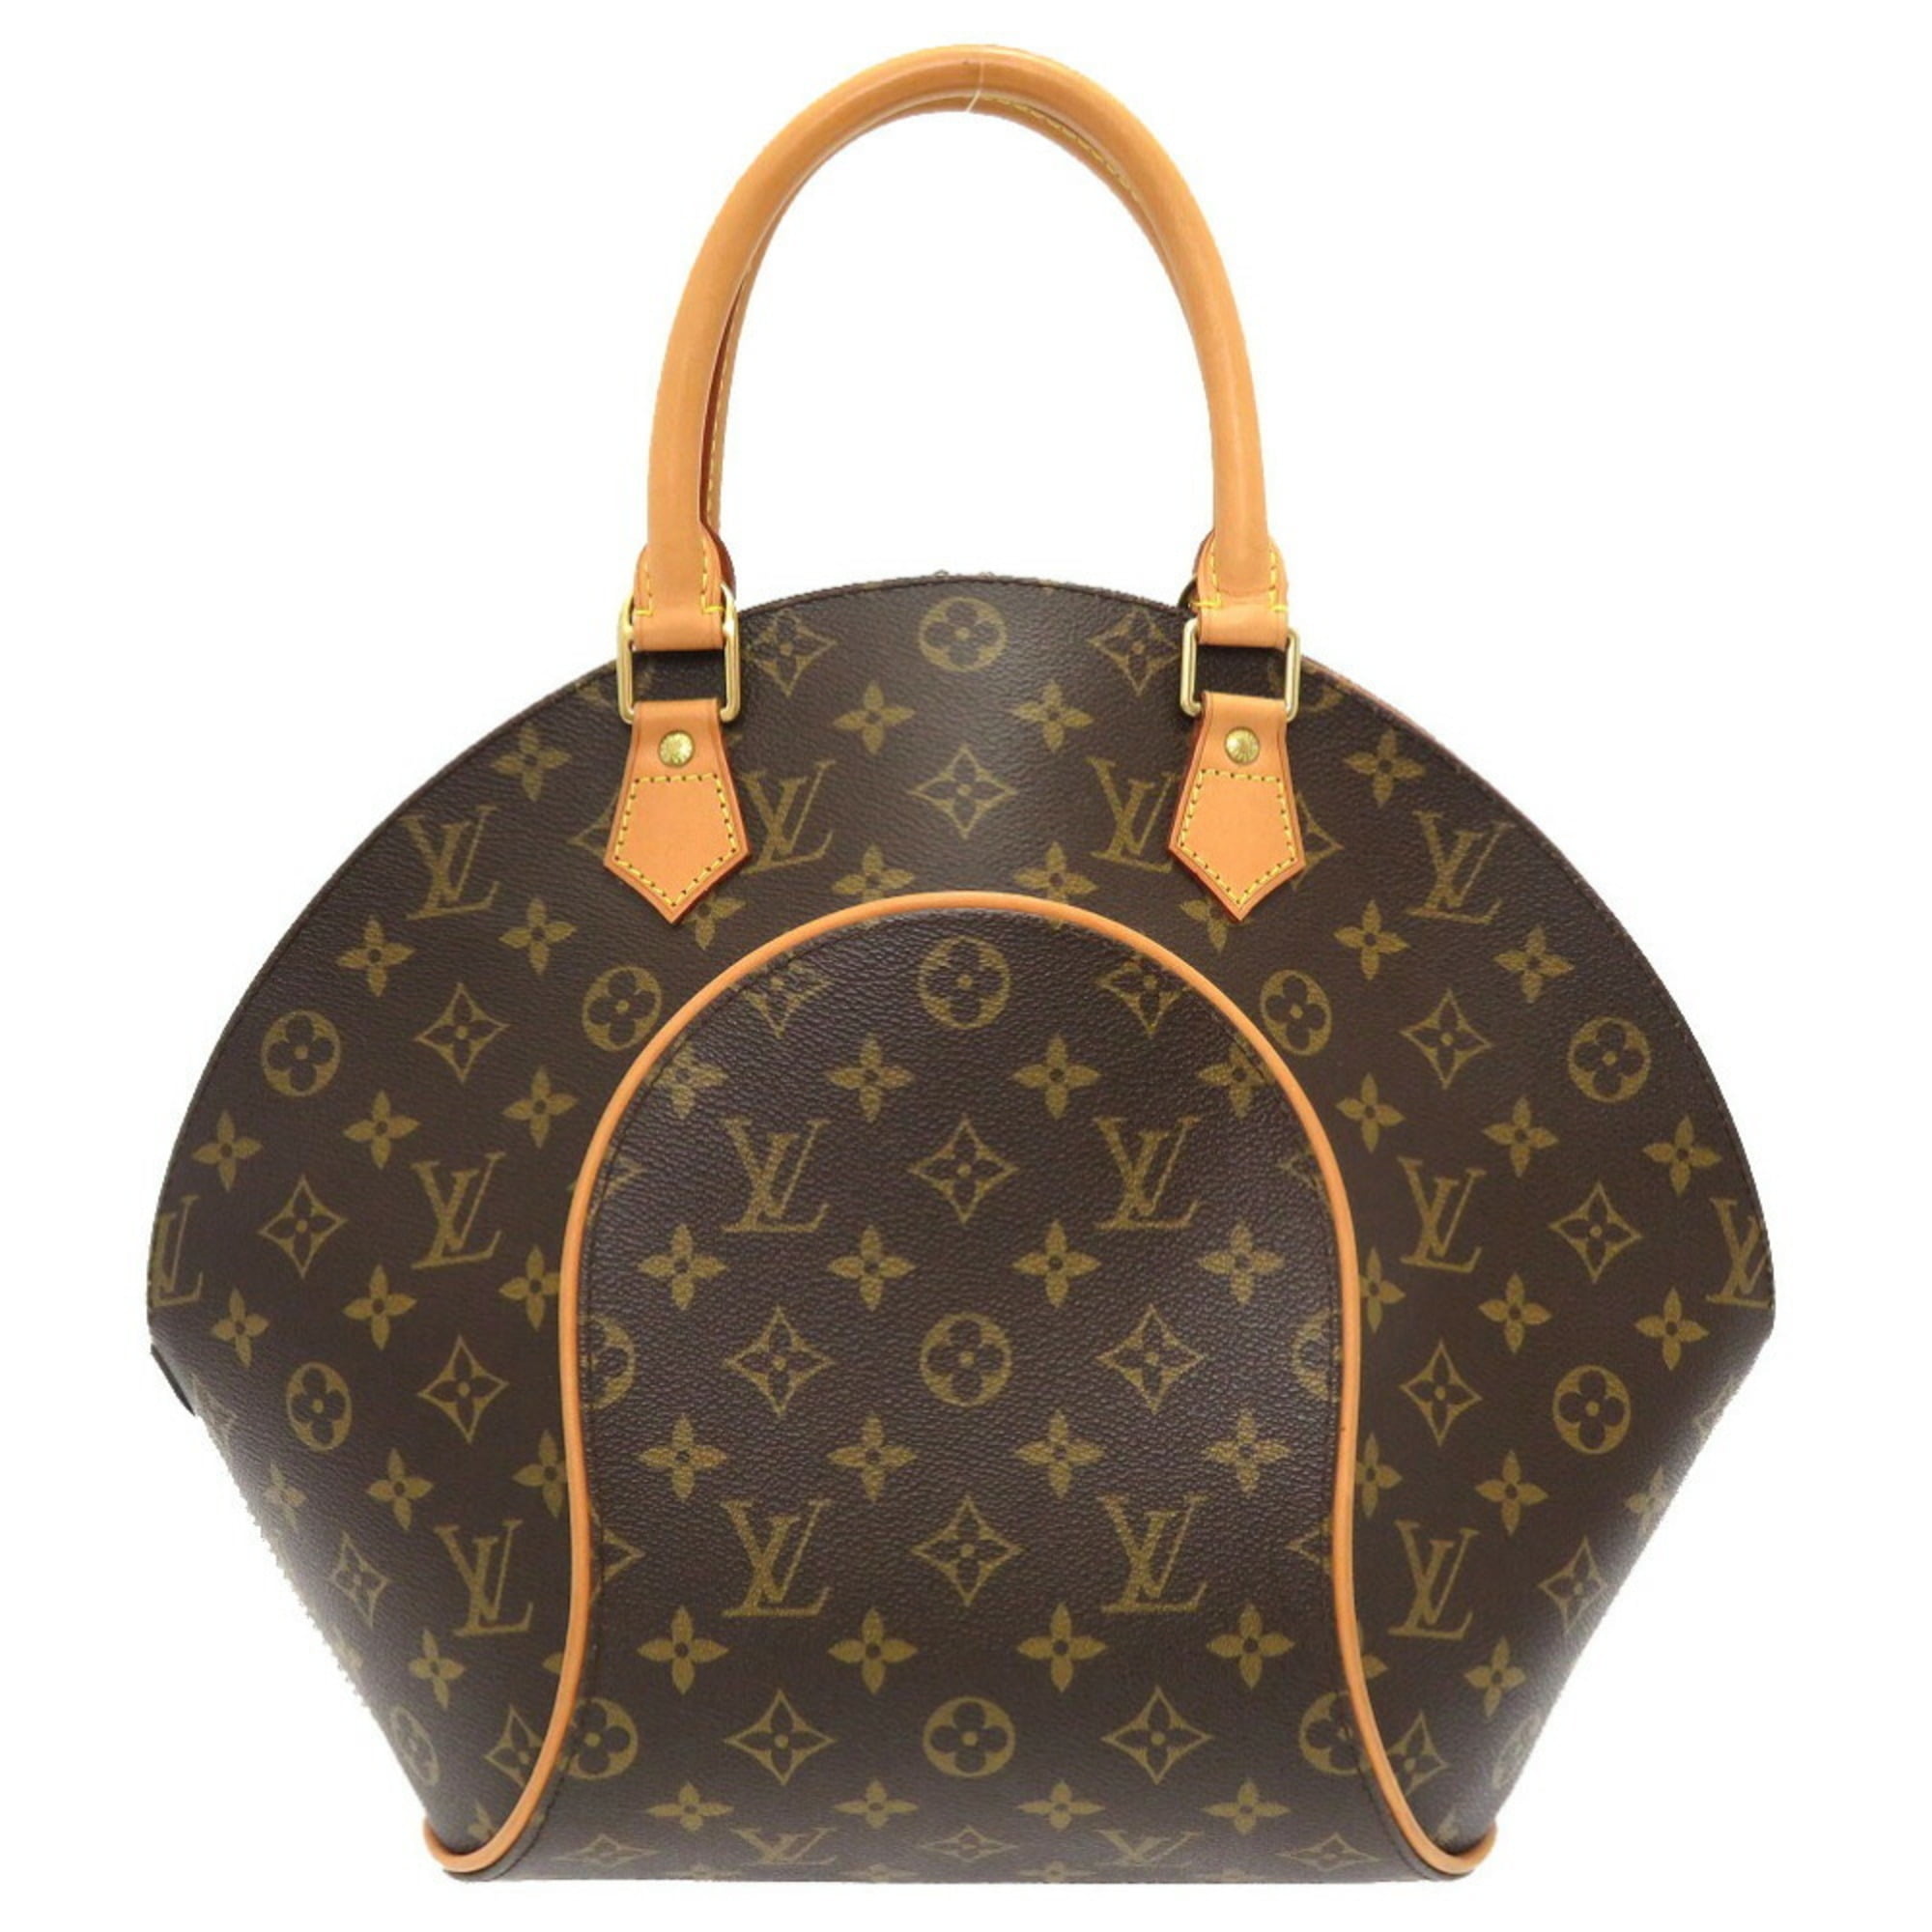 Authenticated used Louis Vuitton Monogram Ellipse mm M51126 Handbag LV 0013 Louis Vuitton, Adult Unisex, Size: (HxWxD): 30cm x 40cm x 15cm / 11.81'' x